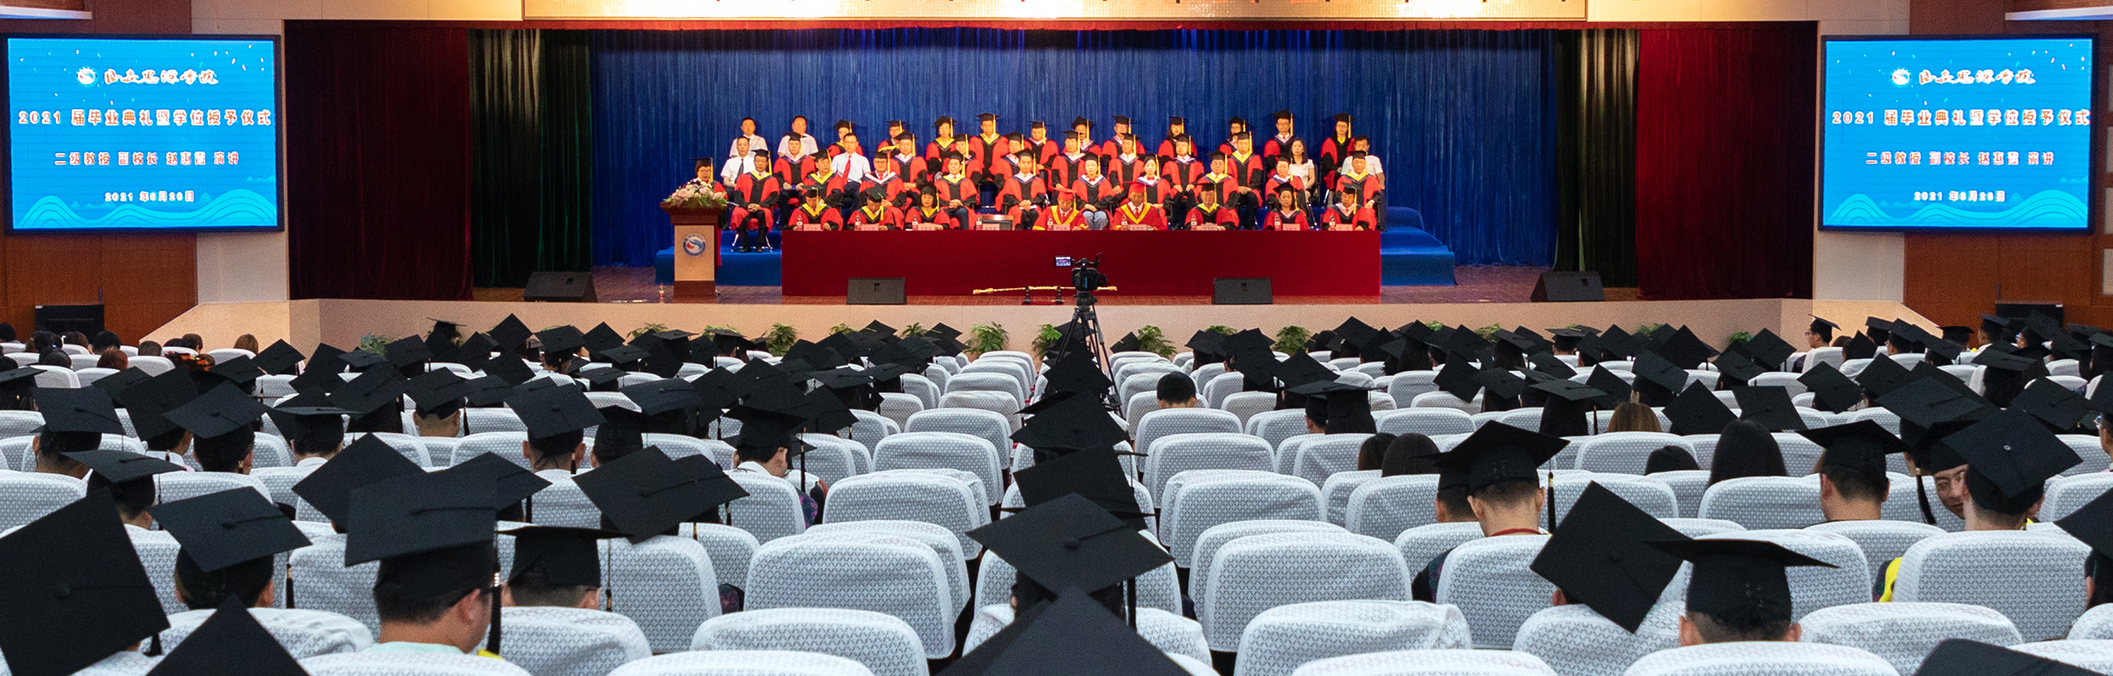 西安思源学院2021届毕业典礼暨学位授予仪式隆重举行